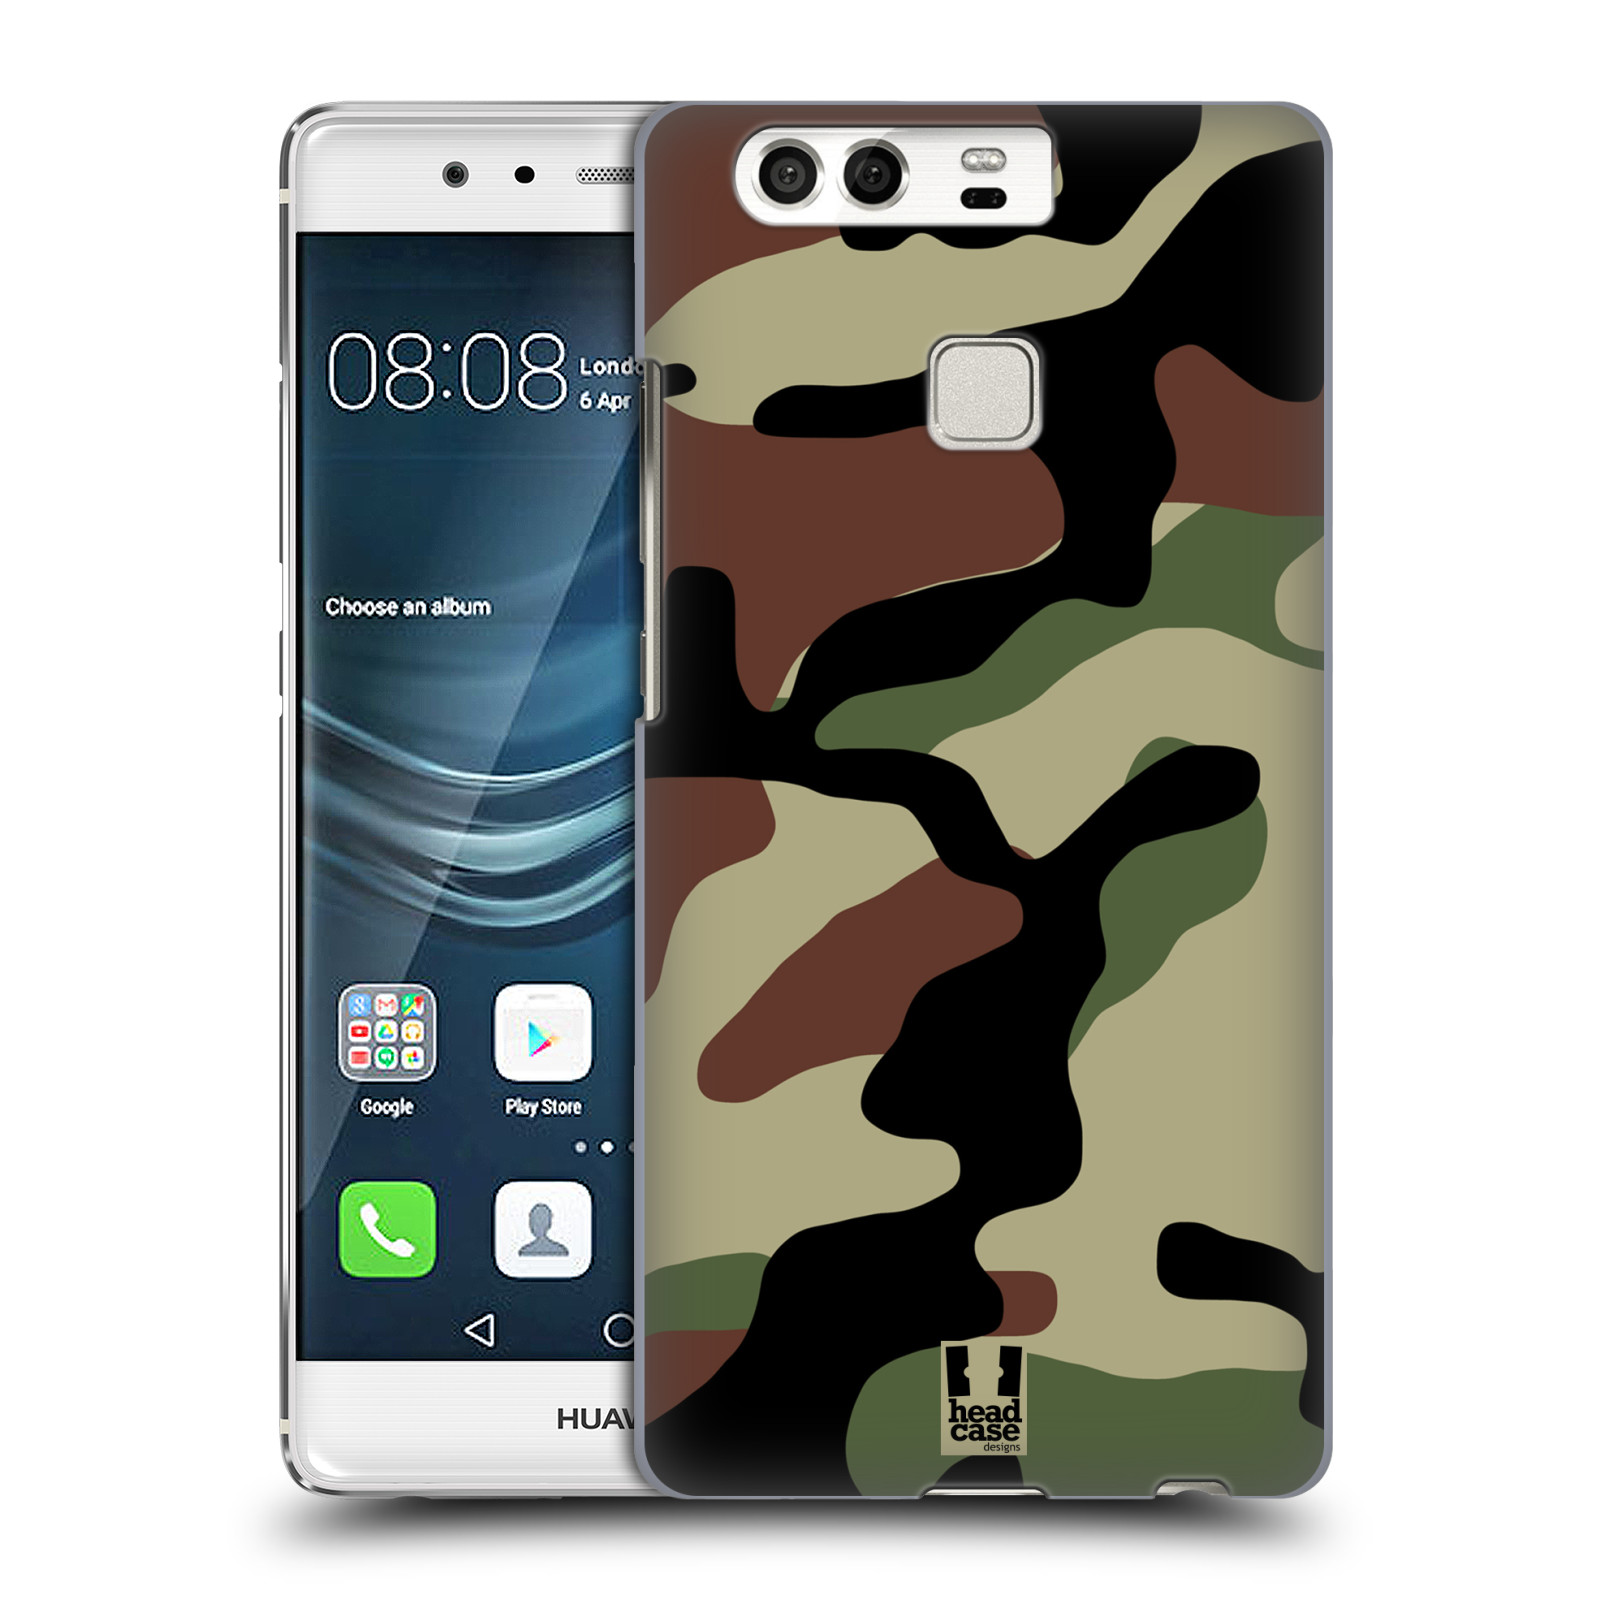 Pouzdro na mobil Huawei P9 / P9 DUAL SIM - HEAD CASE - Kamufláž les